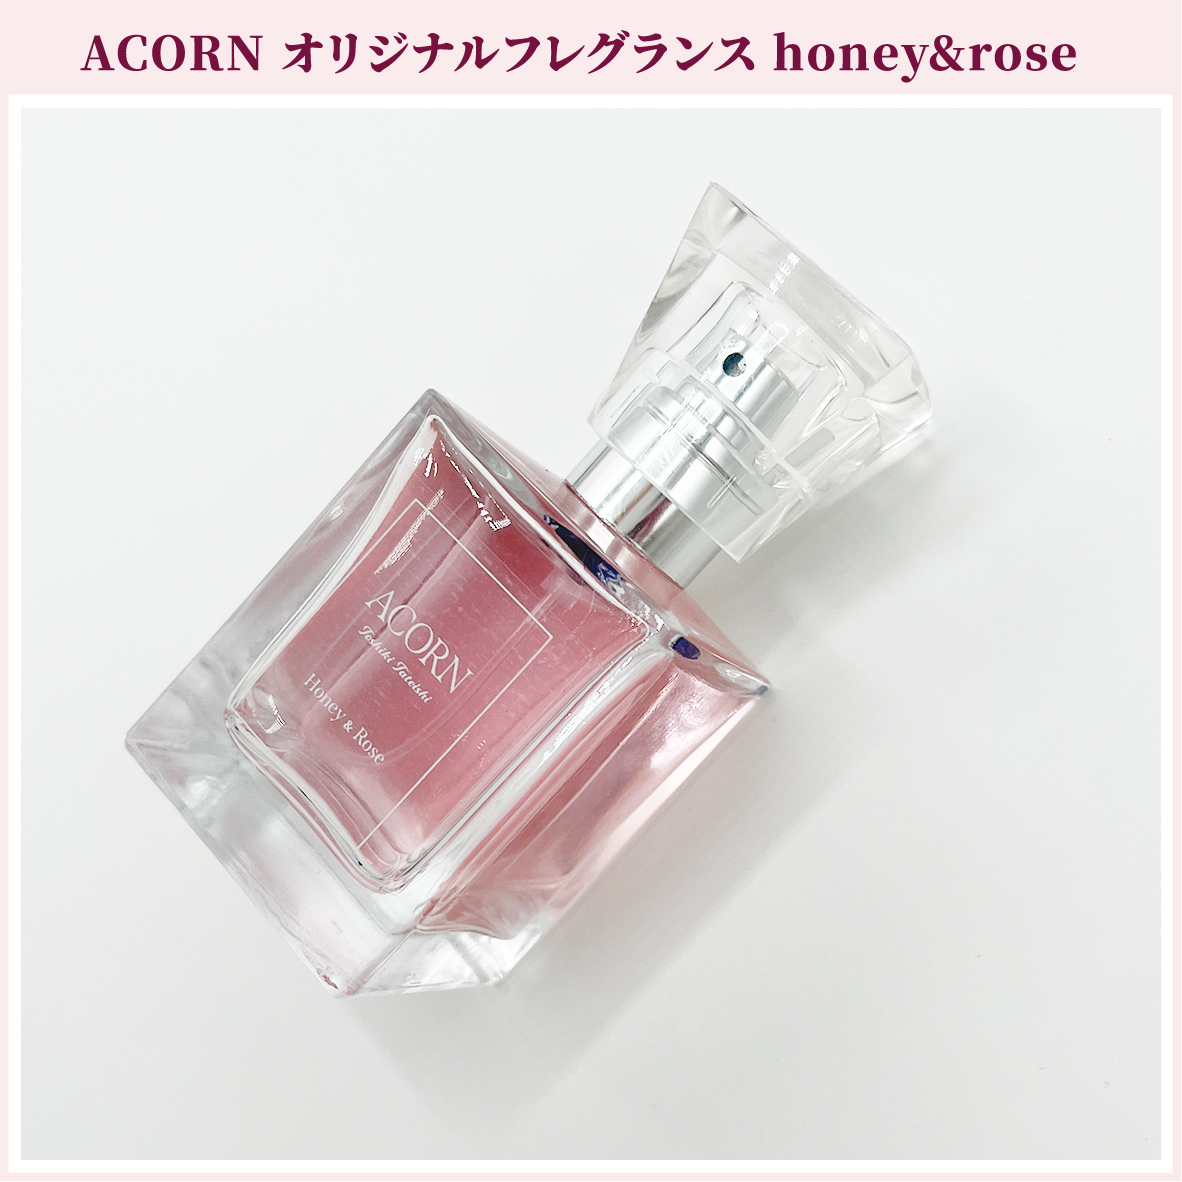 ACORN オリジナルフレグランス honey&rose (ACORN会員限定特典付き)